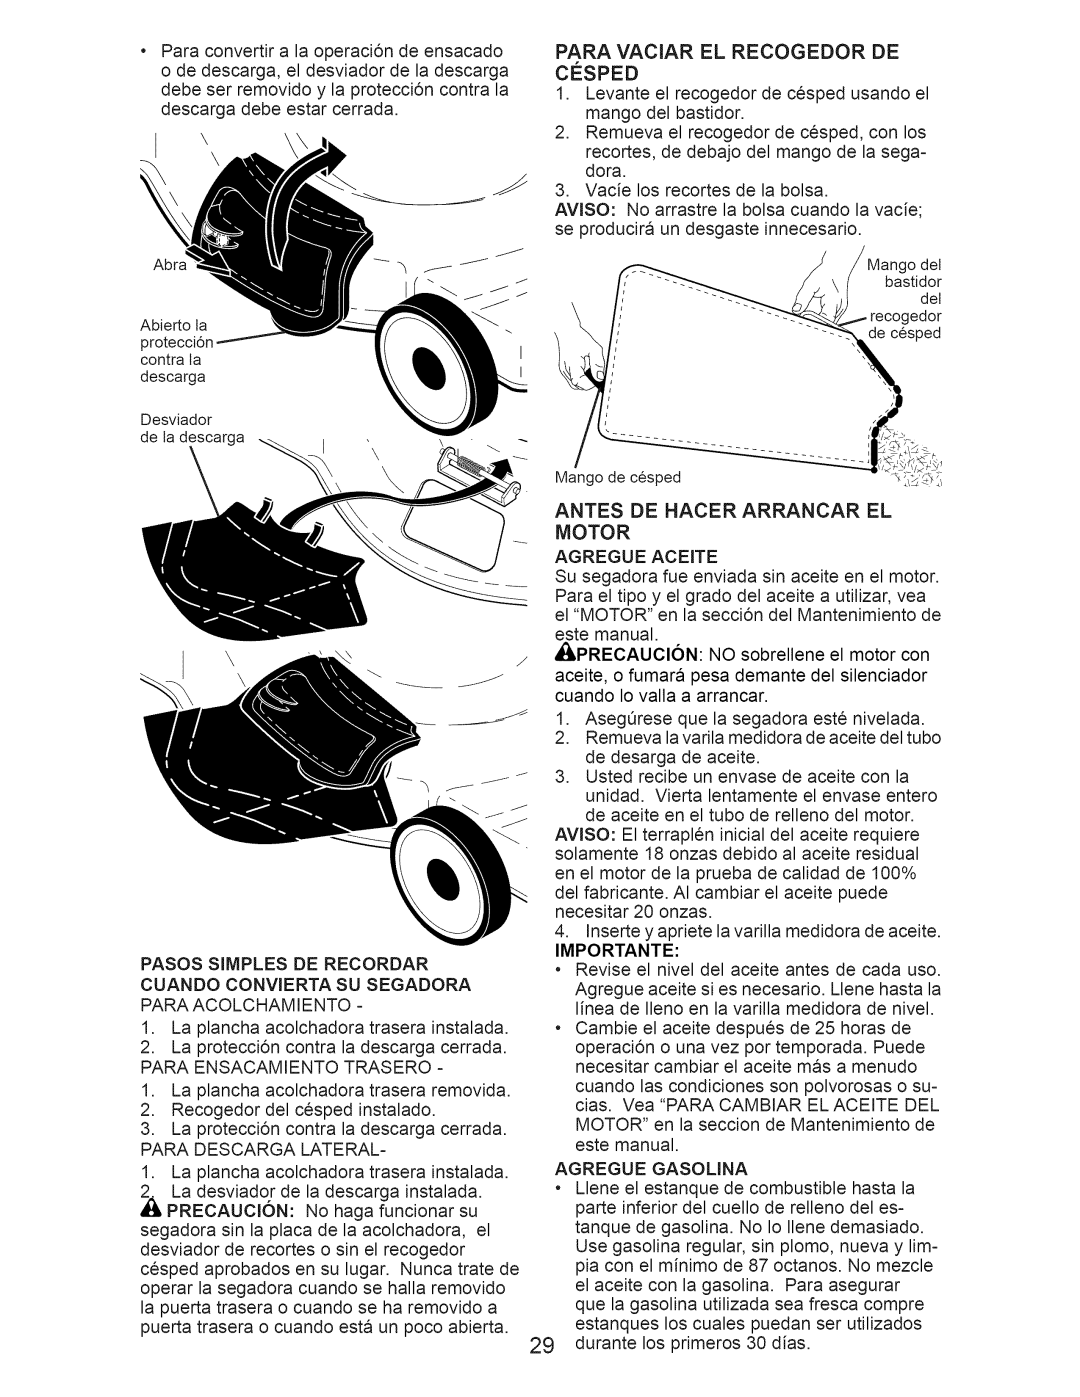 Craftsman 37624 manual Paraconvertira la operaci6ndeensacado, Para Vaciar El Recogedor De, Antes De Hacer Arrancar El Motor 